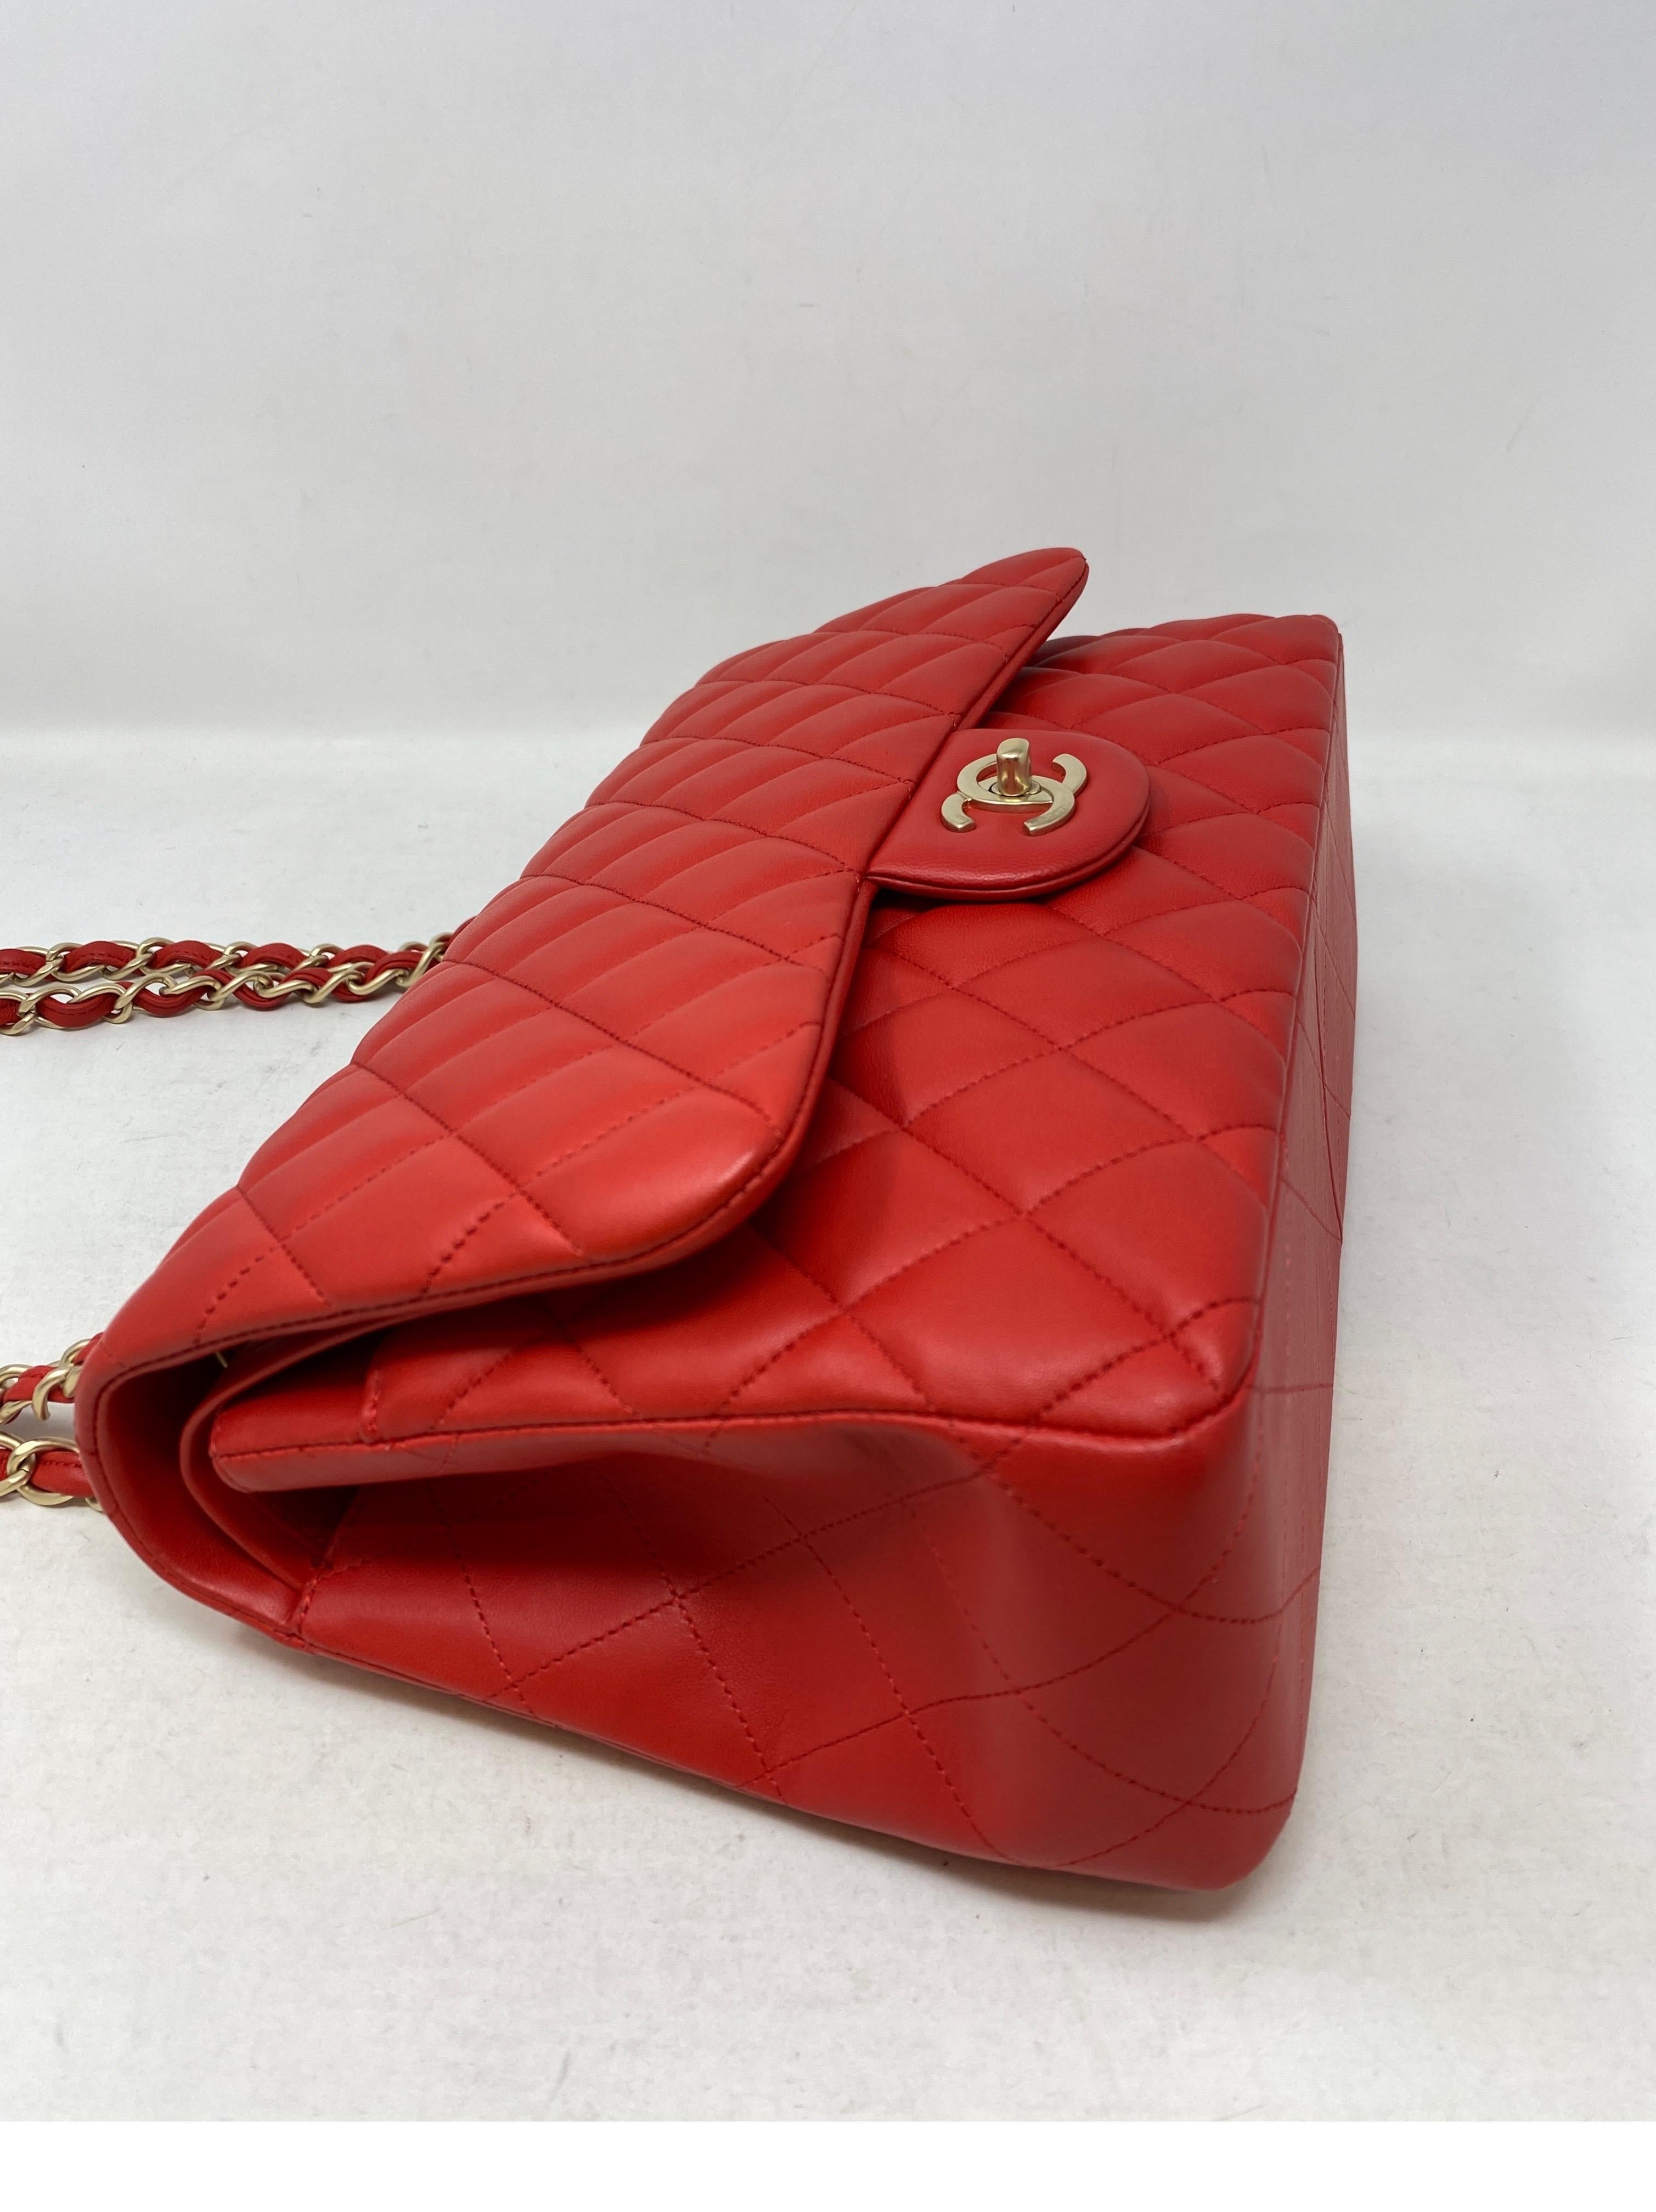 Chanel Red Jumbo Bag  6